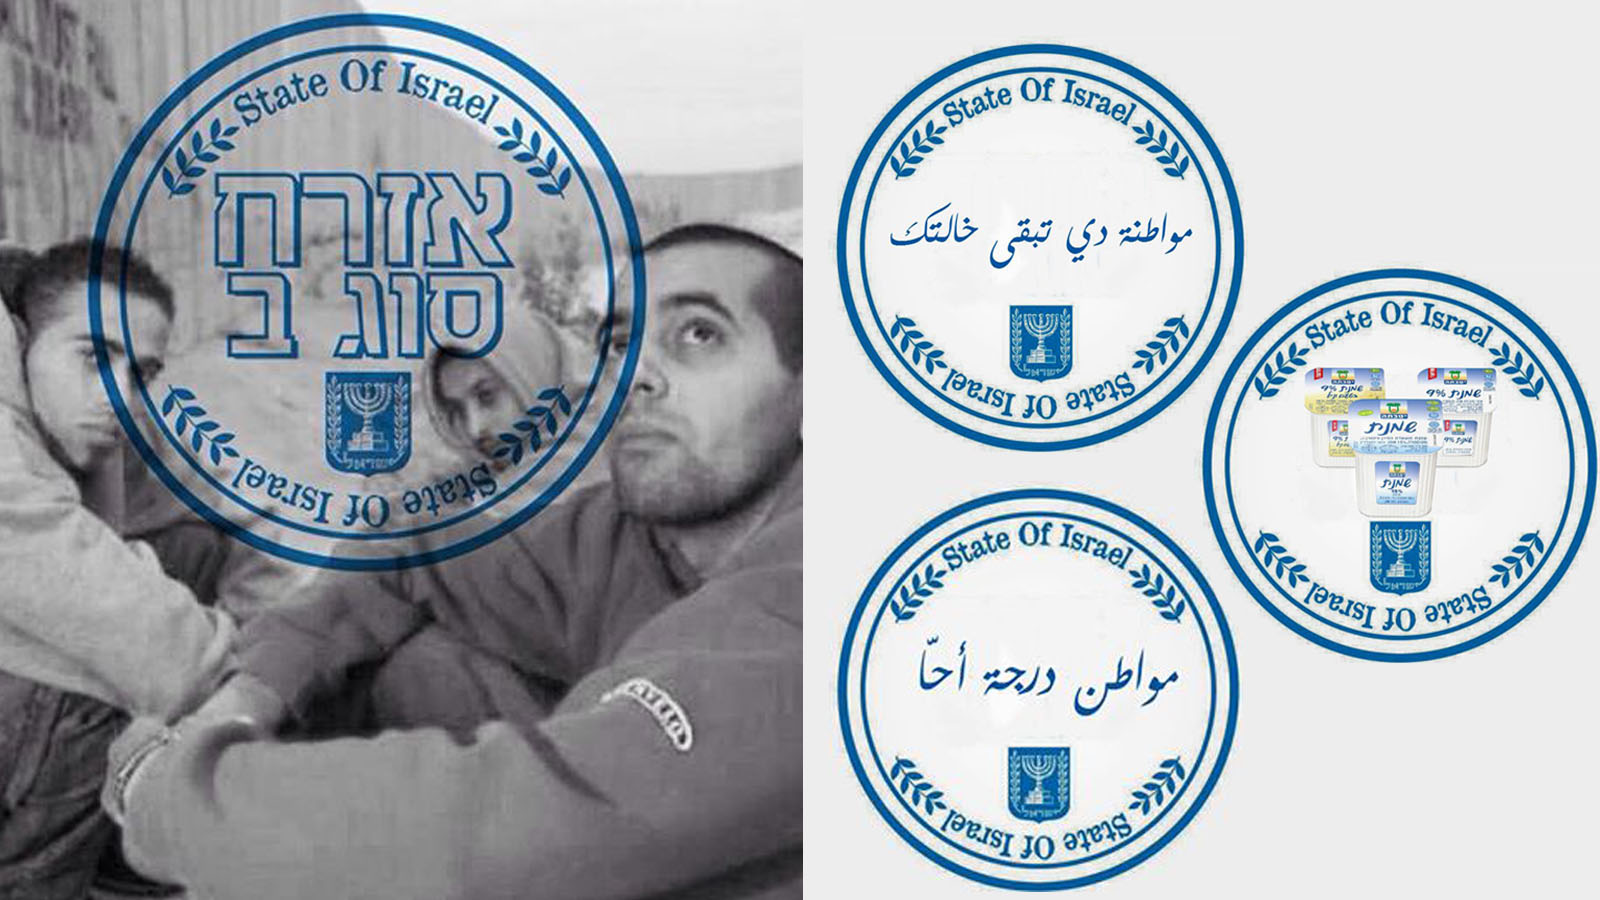 ملصق الحملة المناهضة مع التعديلات الساخرة للناشط محمود عمر